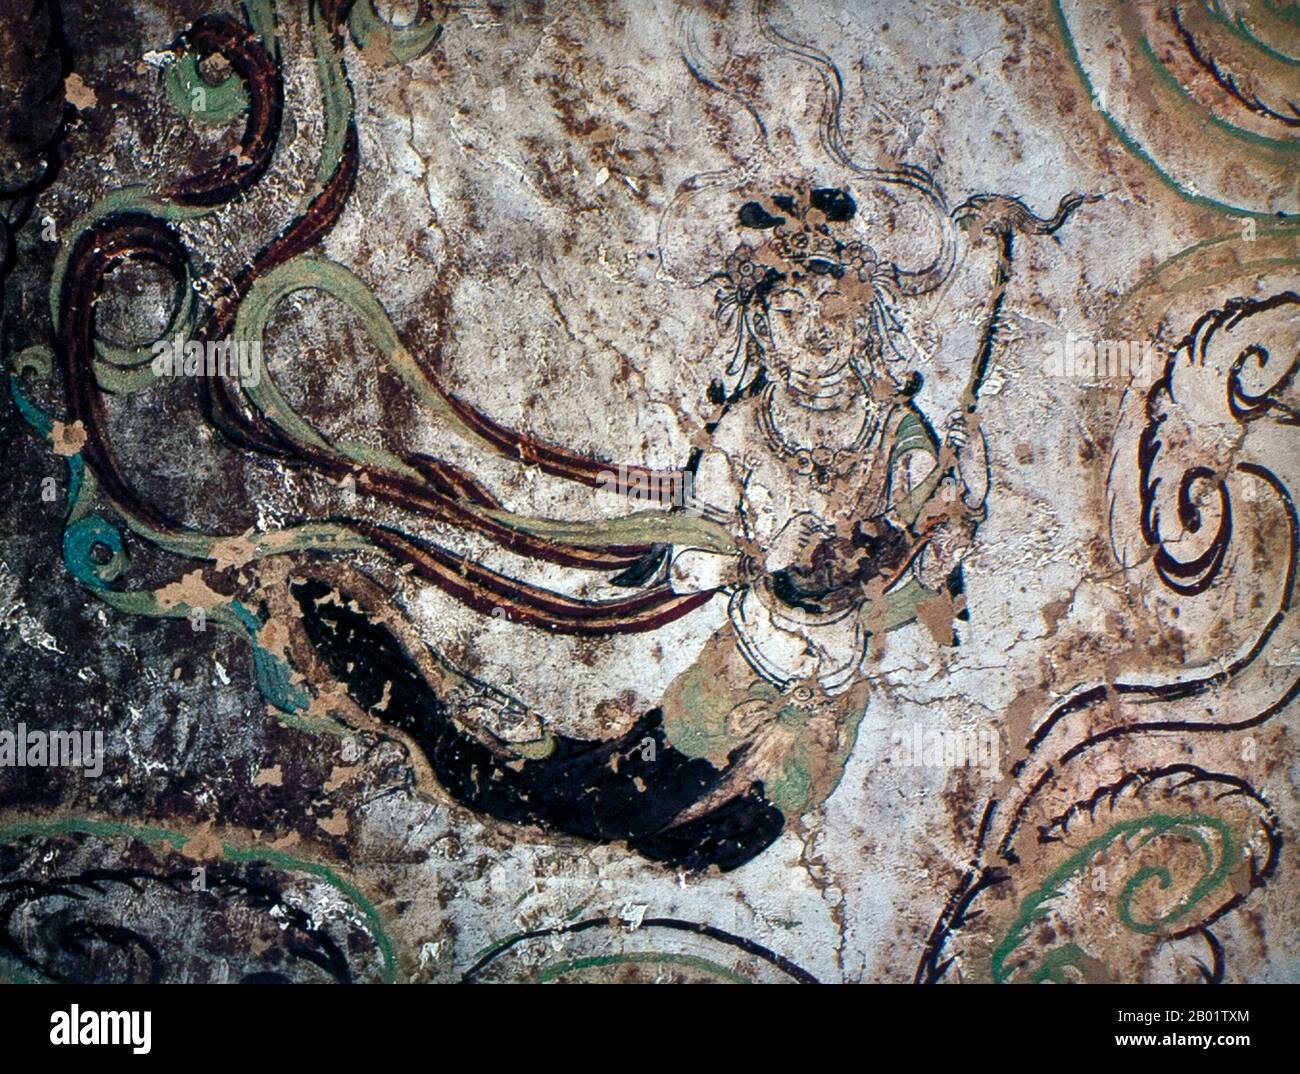 Cina: Musicista celeste, Cave 15, Yulin Caves, dinastia Tang (618-907). Le Grotte di Yulin sono un complesso di templi buddisti nella contea di Guazhou, provincia di Gansu, Cina. Il sito si trova a circa 100 km ad est dell'oasi cittadina di Dunhuang e delle Grotte di Mogao. Prende il nome dagli omonimi alberi di olmo che costeggiano il fiume Yulin, che scorre attraverso il sito e separa le due scogliere da cui sono state scavate le grotte. Le quarantadue grotte ospitano circa 250 statue policrome e 4.200 metri quadrati di dipinti murali, risalenti alla dinastia Tang e alla dinastia Yuan. Foto Stock